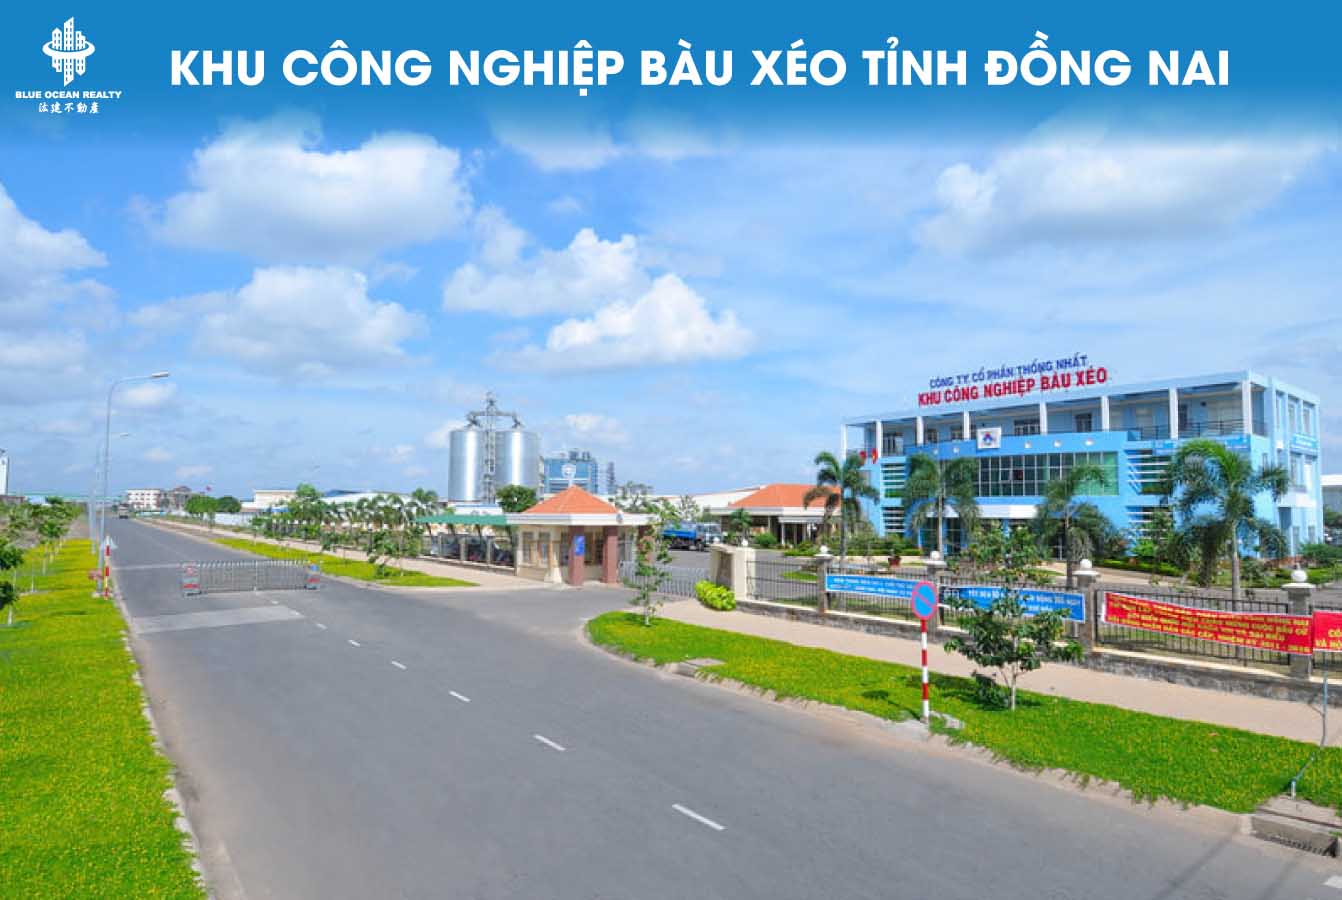 Khu công nghiệp Bàu Xéo tỉnh Đồng Nai